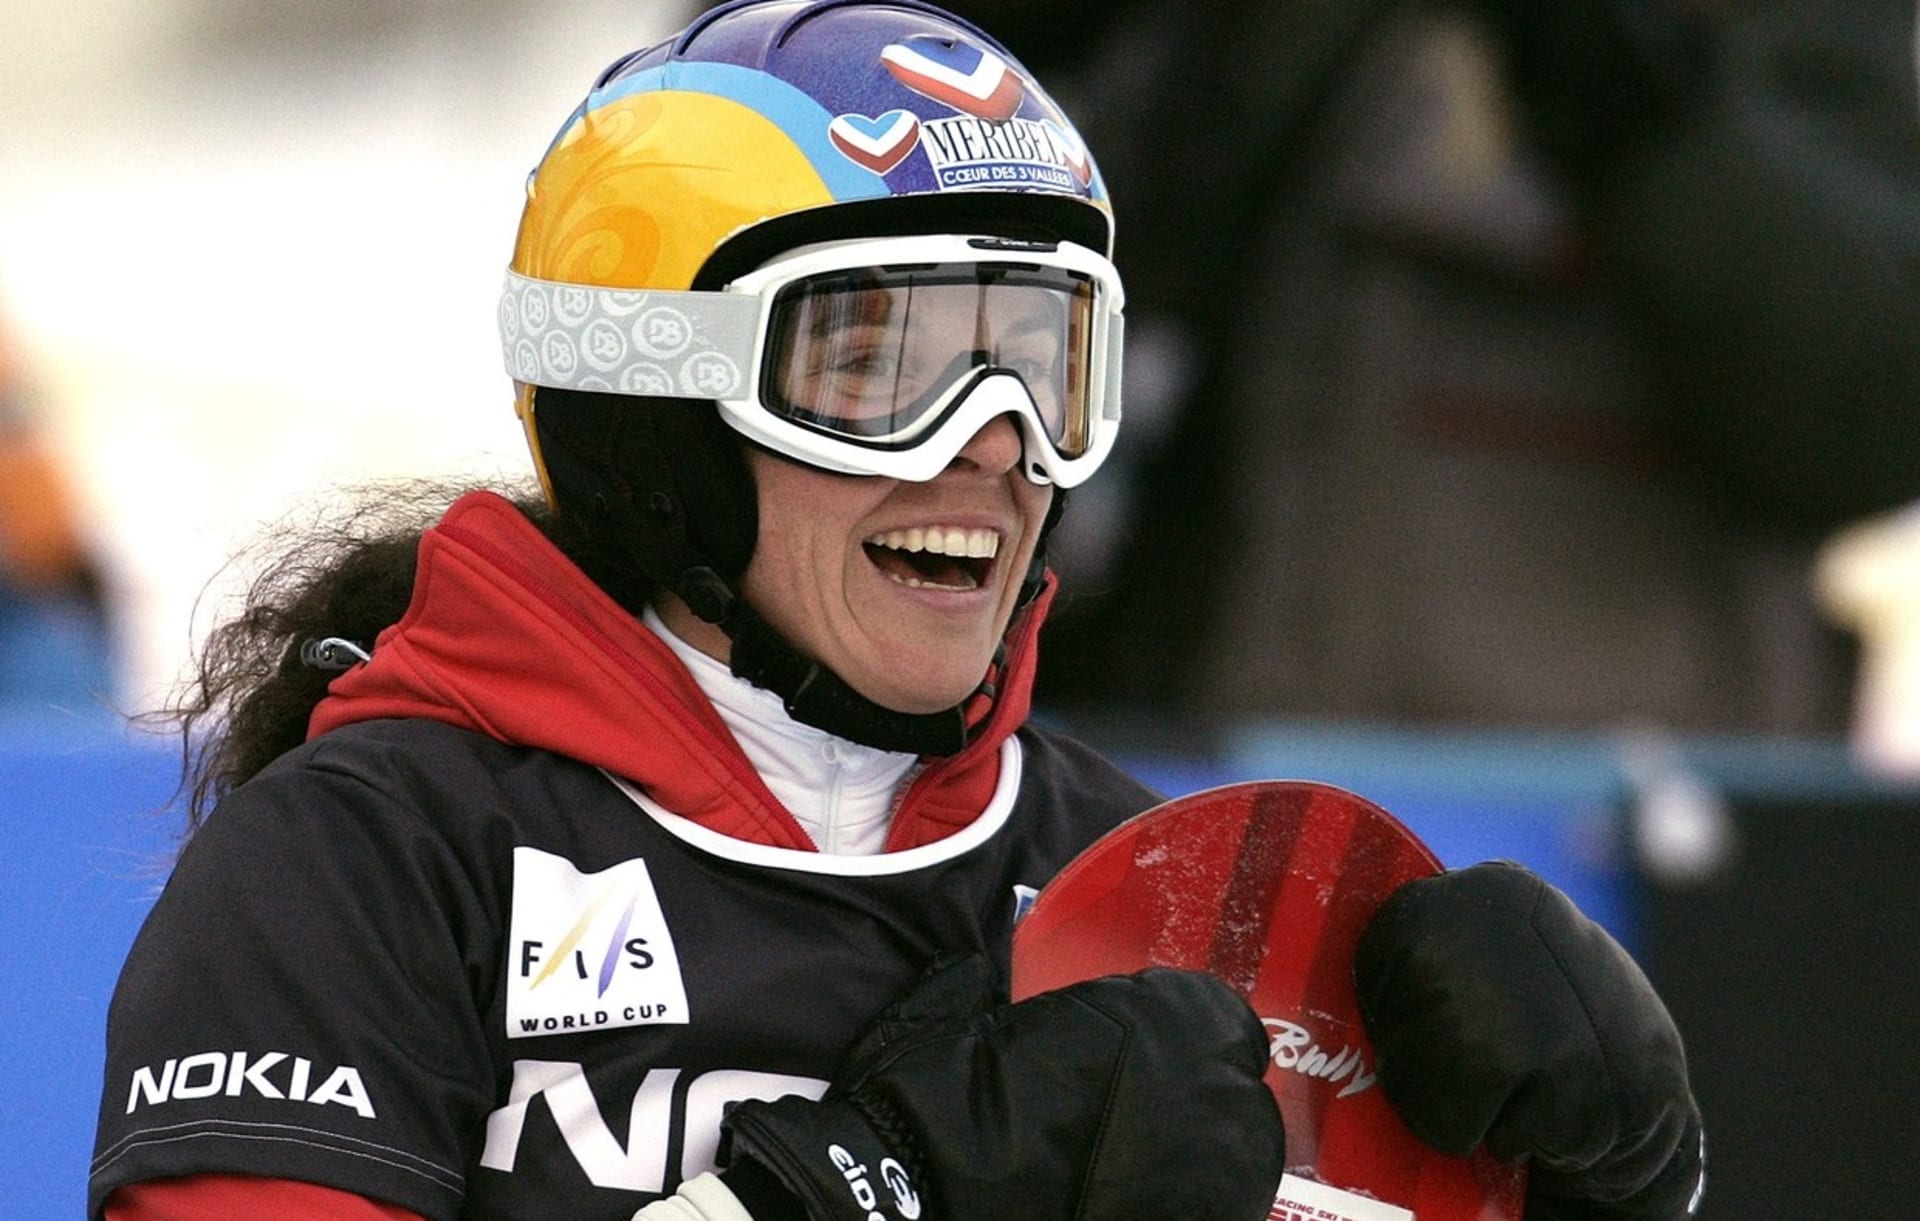 Francouzka Julie Pomagalská se stala mistryní světa ve snowboardcrossu v roce 1999, dvacet let před Češkou Evou Samkovou. 